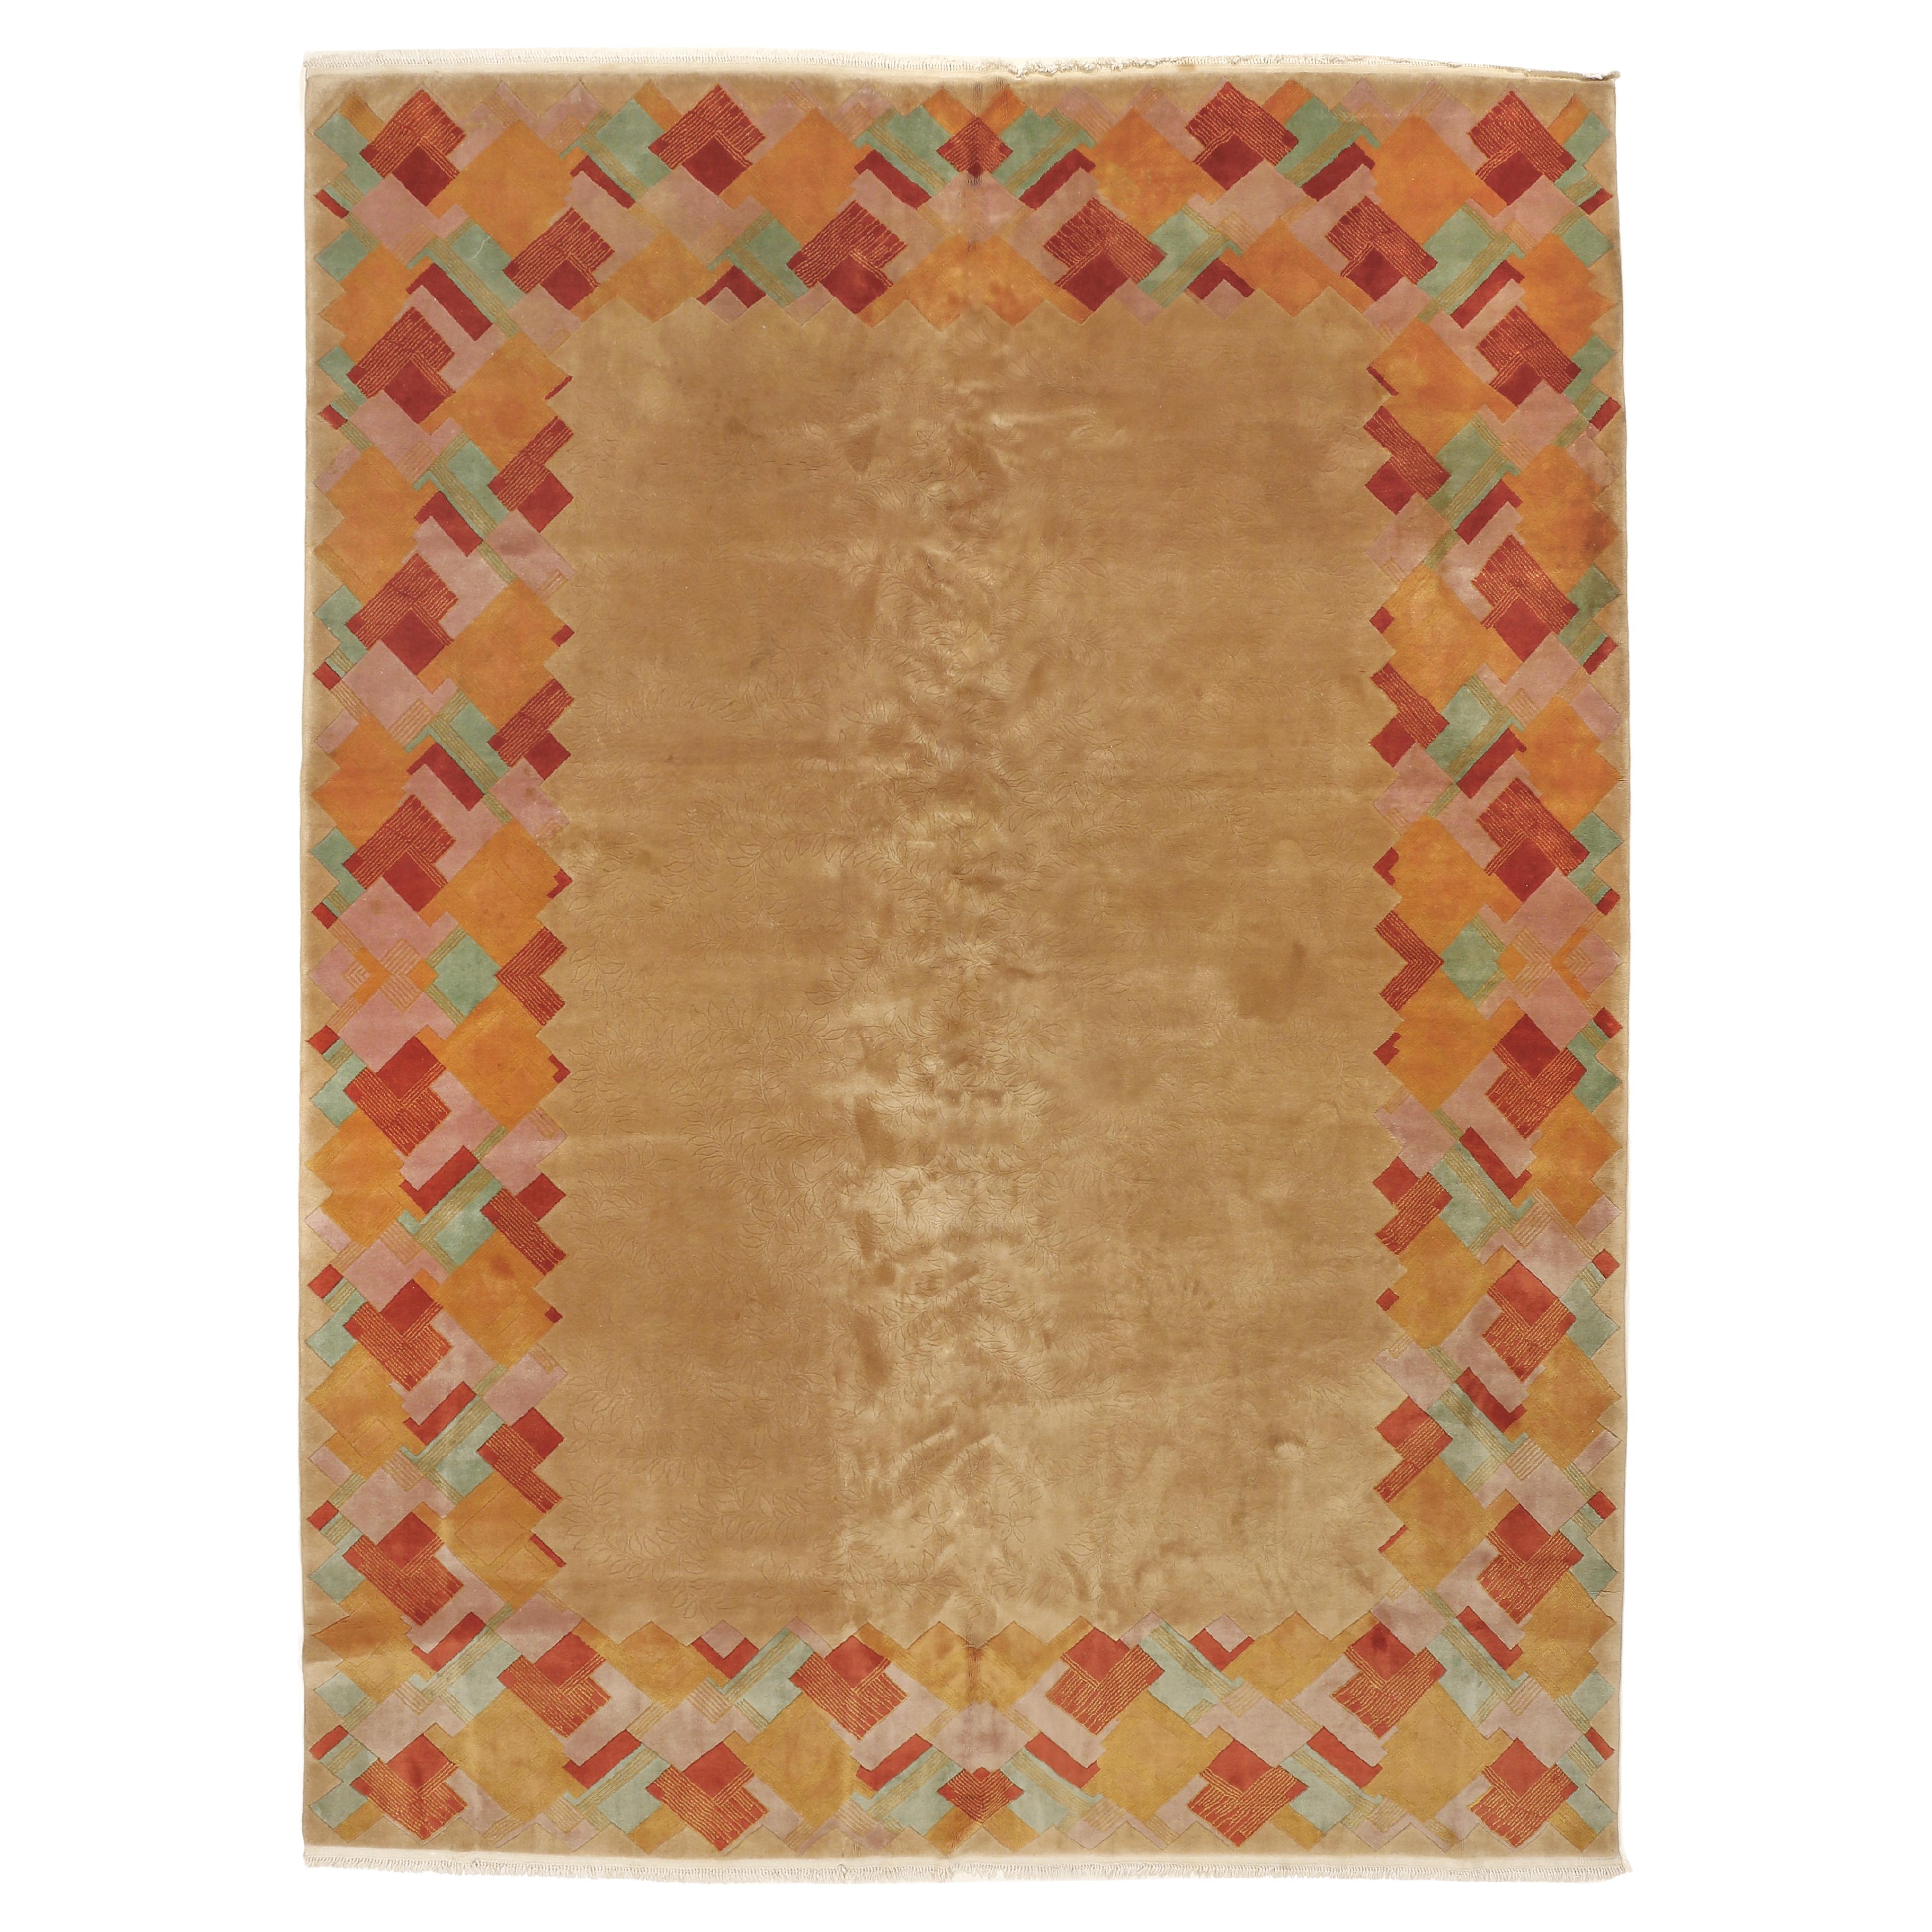 Eccezionale tappeto cinese Art Deco con bordo cubista di Nichols & Co.